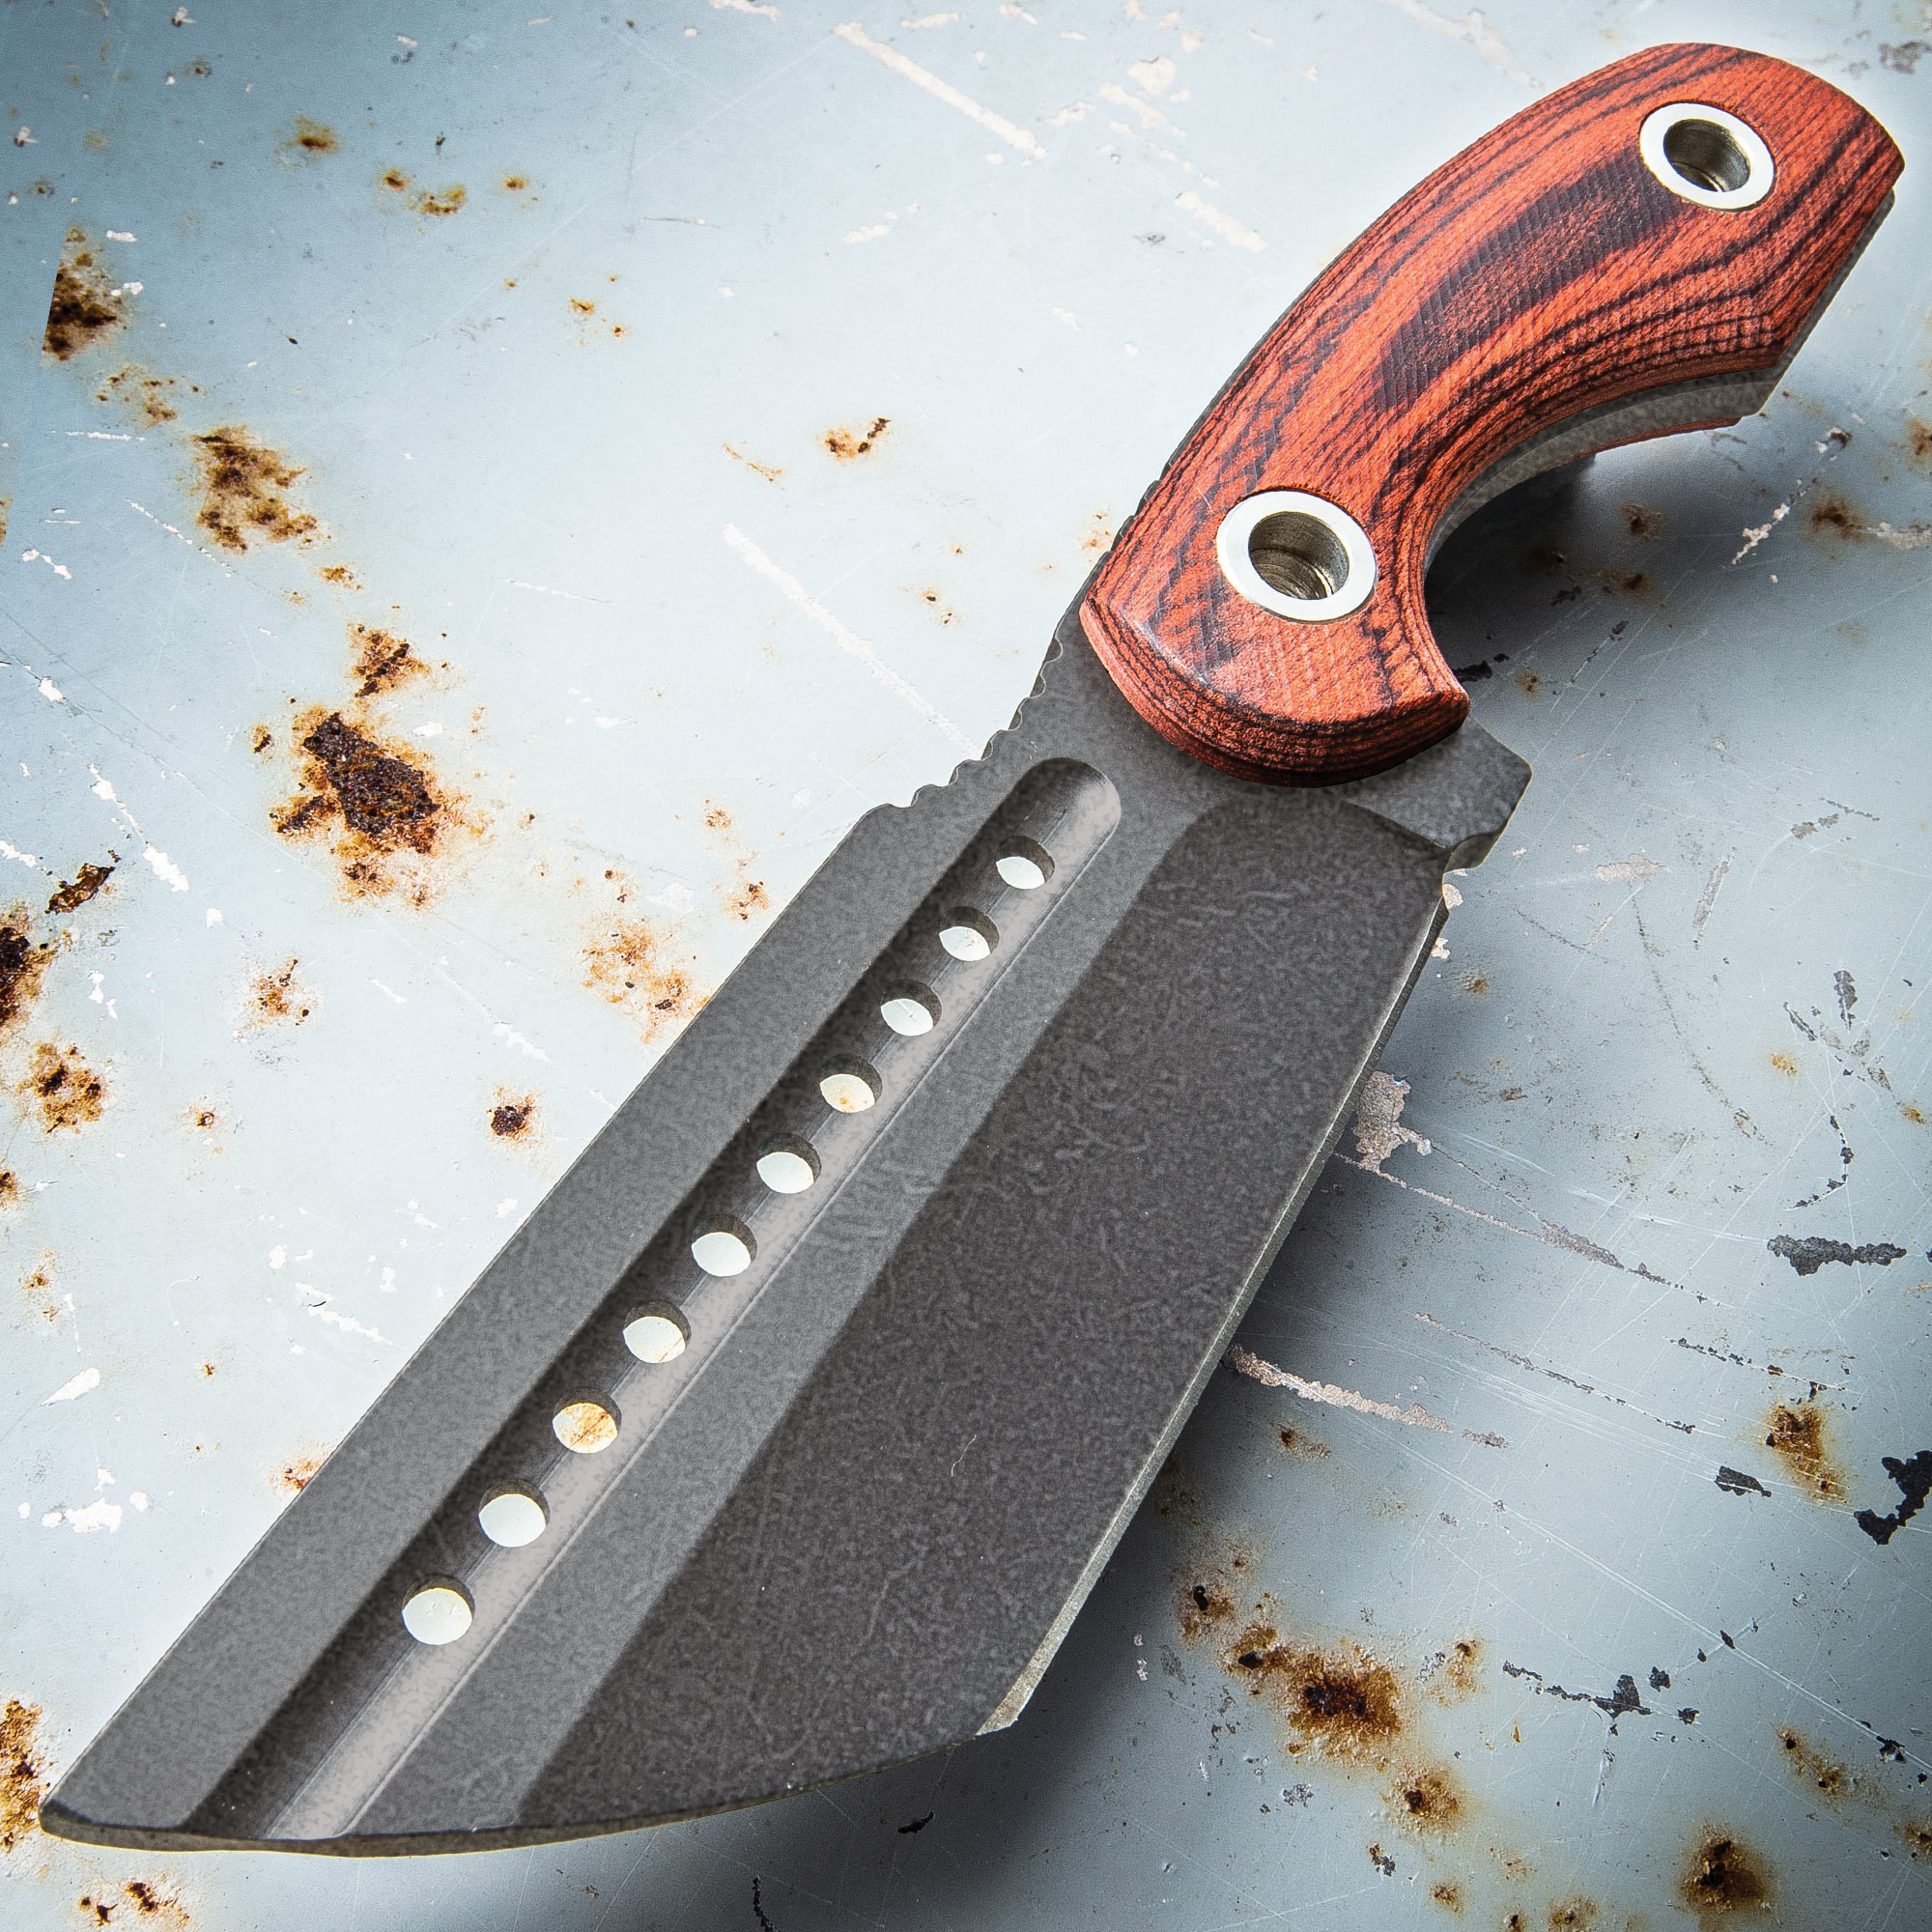 The Bruiser Fixed Blade Knife w/Sheath